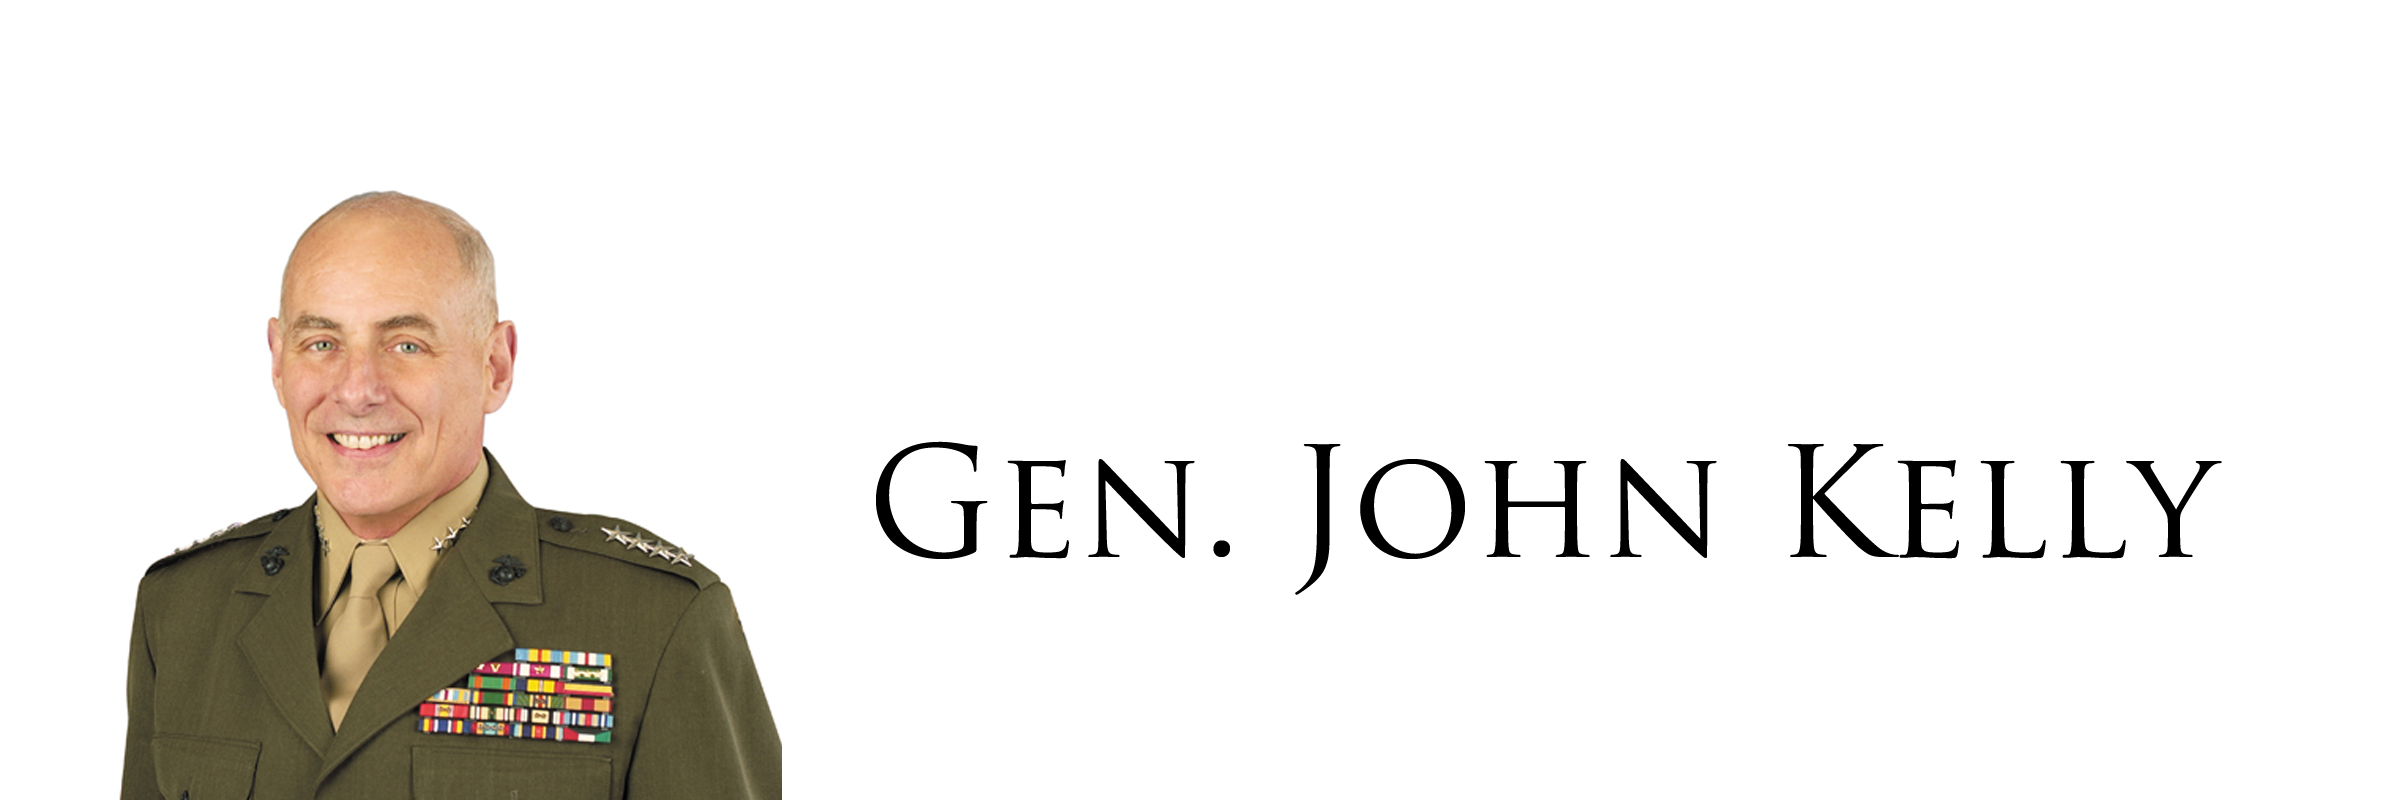 Gen. John Kelly